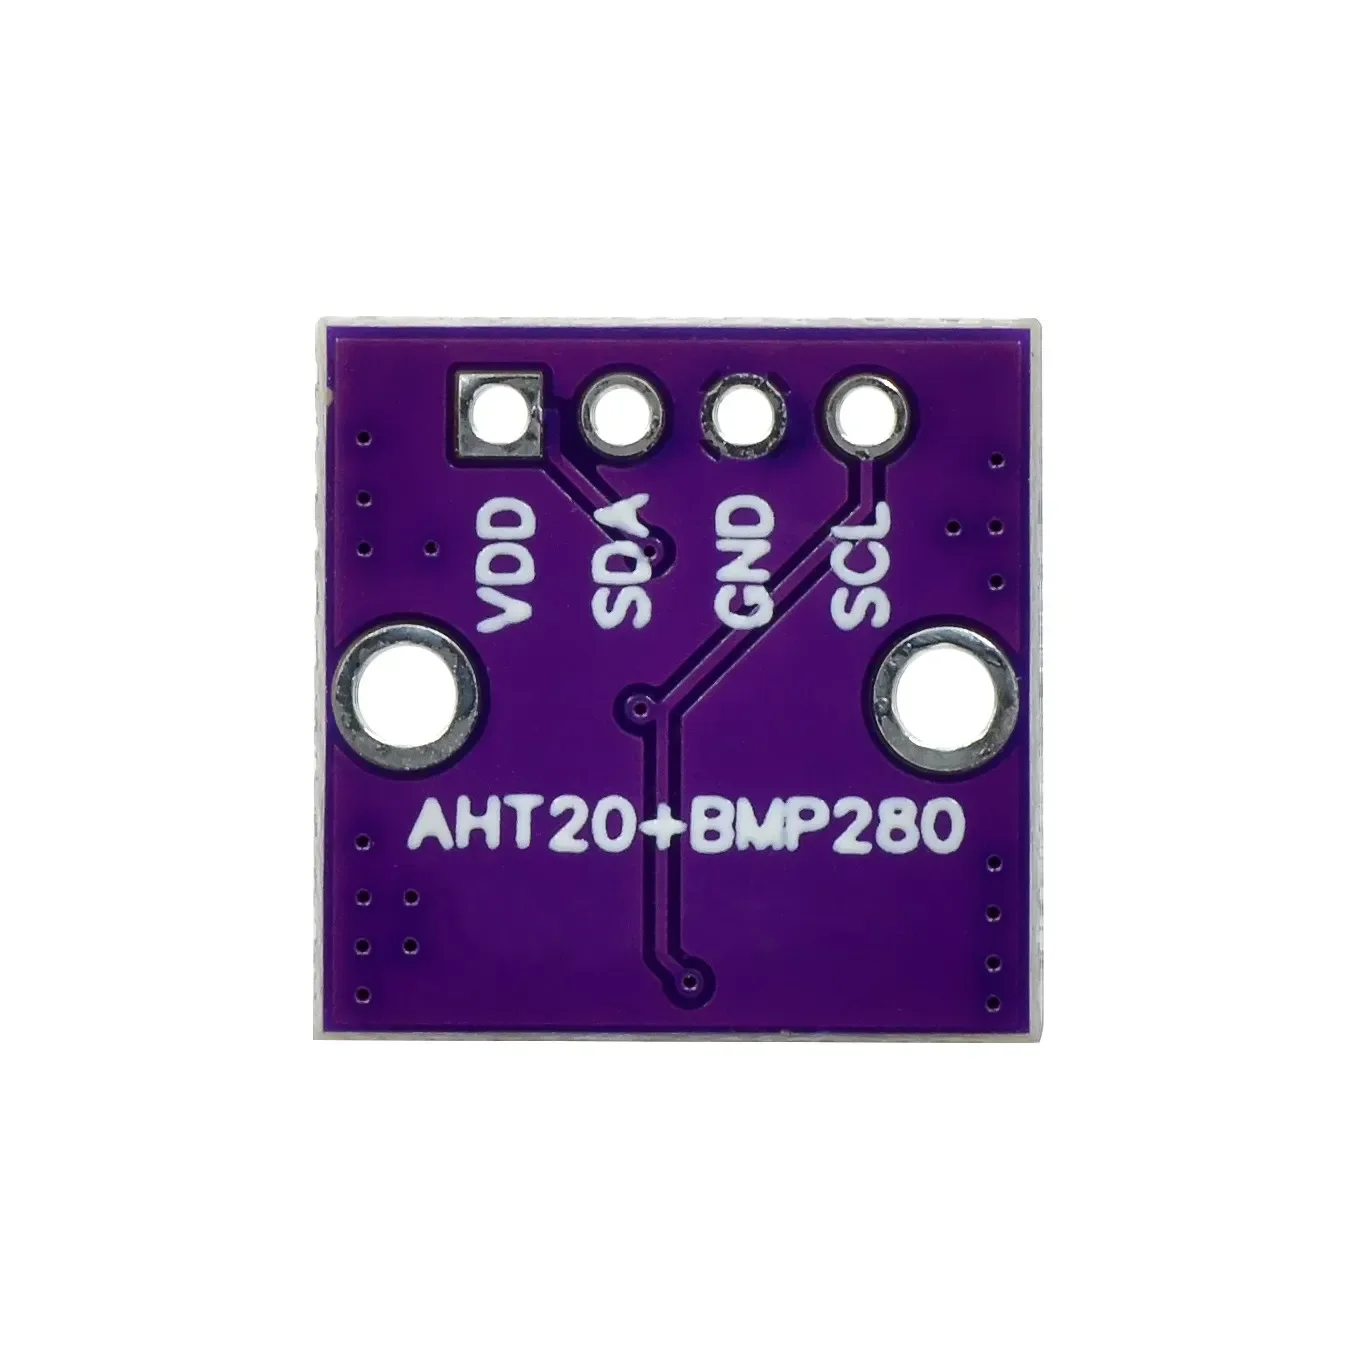 AHT20 + BMP280 Модуль температуры, влажности и давления воздуха, высокоточный цифровой датчик температуры, влажности и давления воздуха